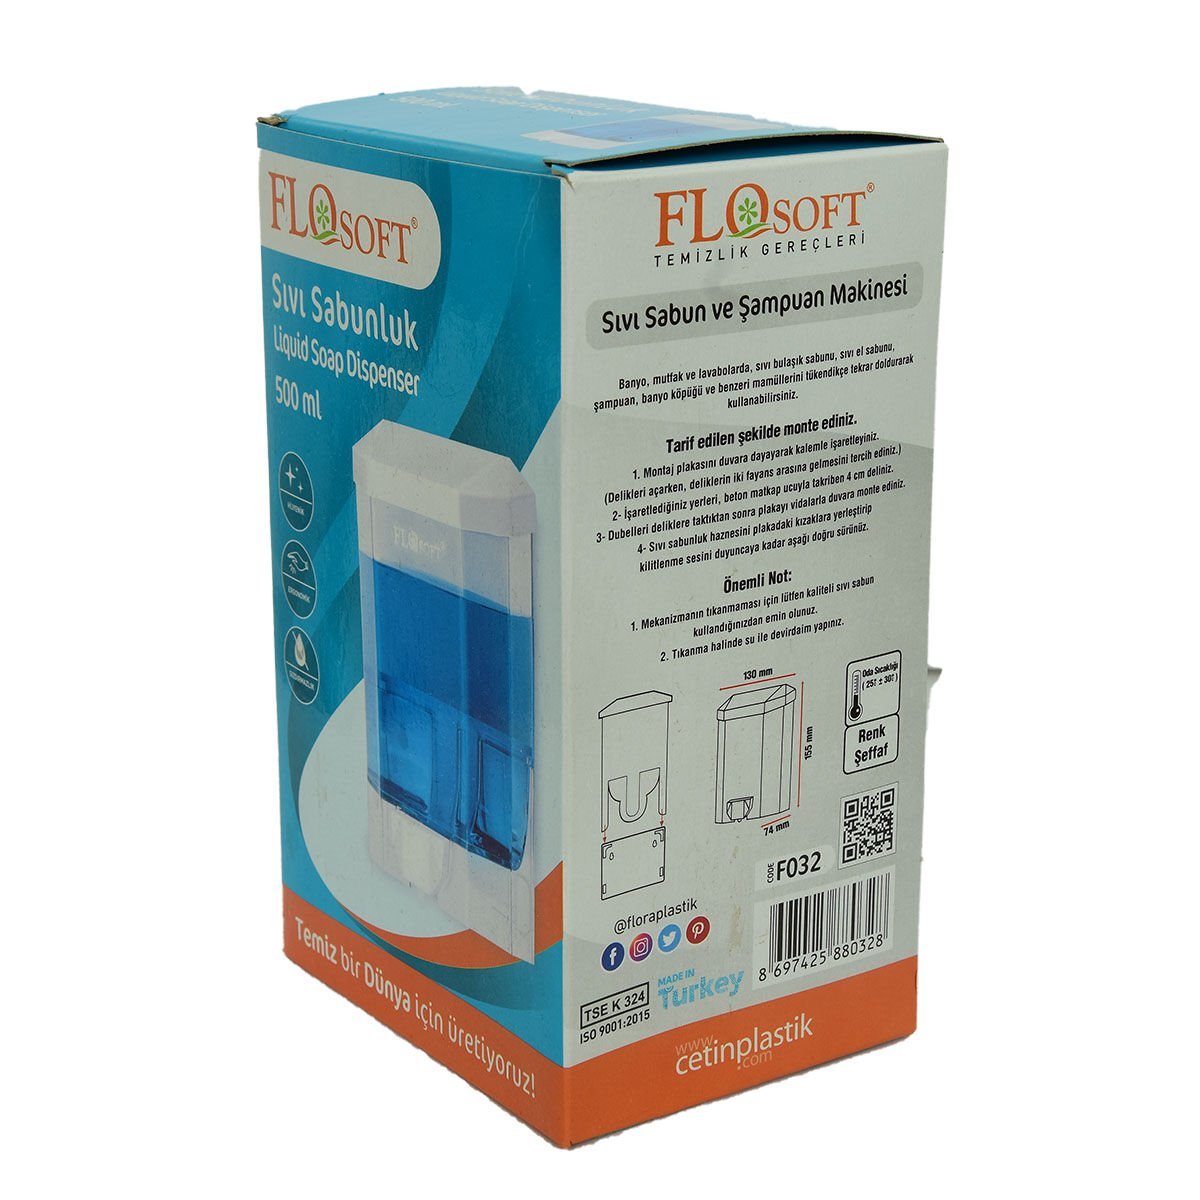 FloSoft Sıvı Sabunluk ve Şampuan Makinası Şeffaf Renk 500 ML Haci